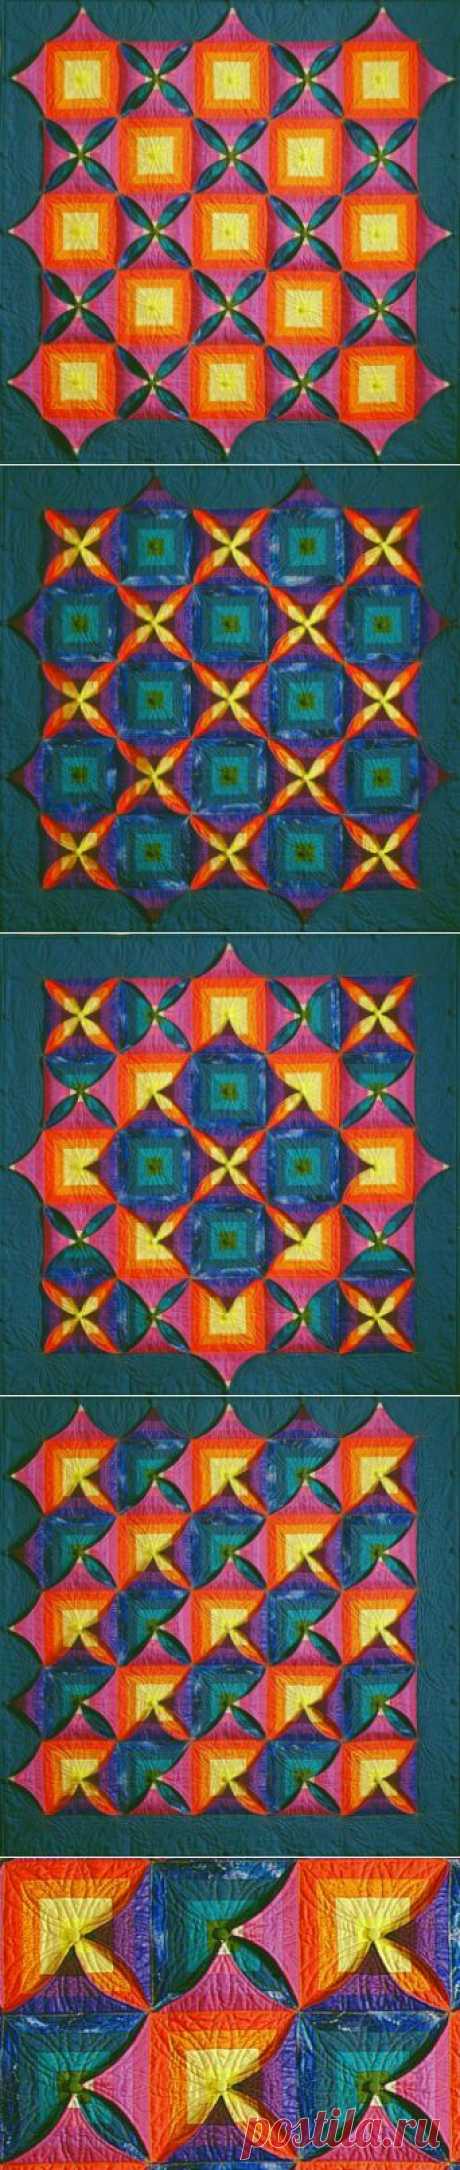 Kameleon tekstildesign with Kameleon Quilts patterns for sale